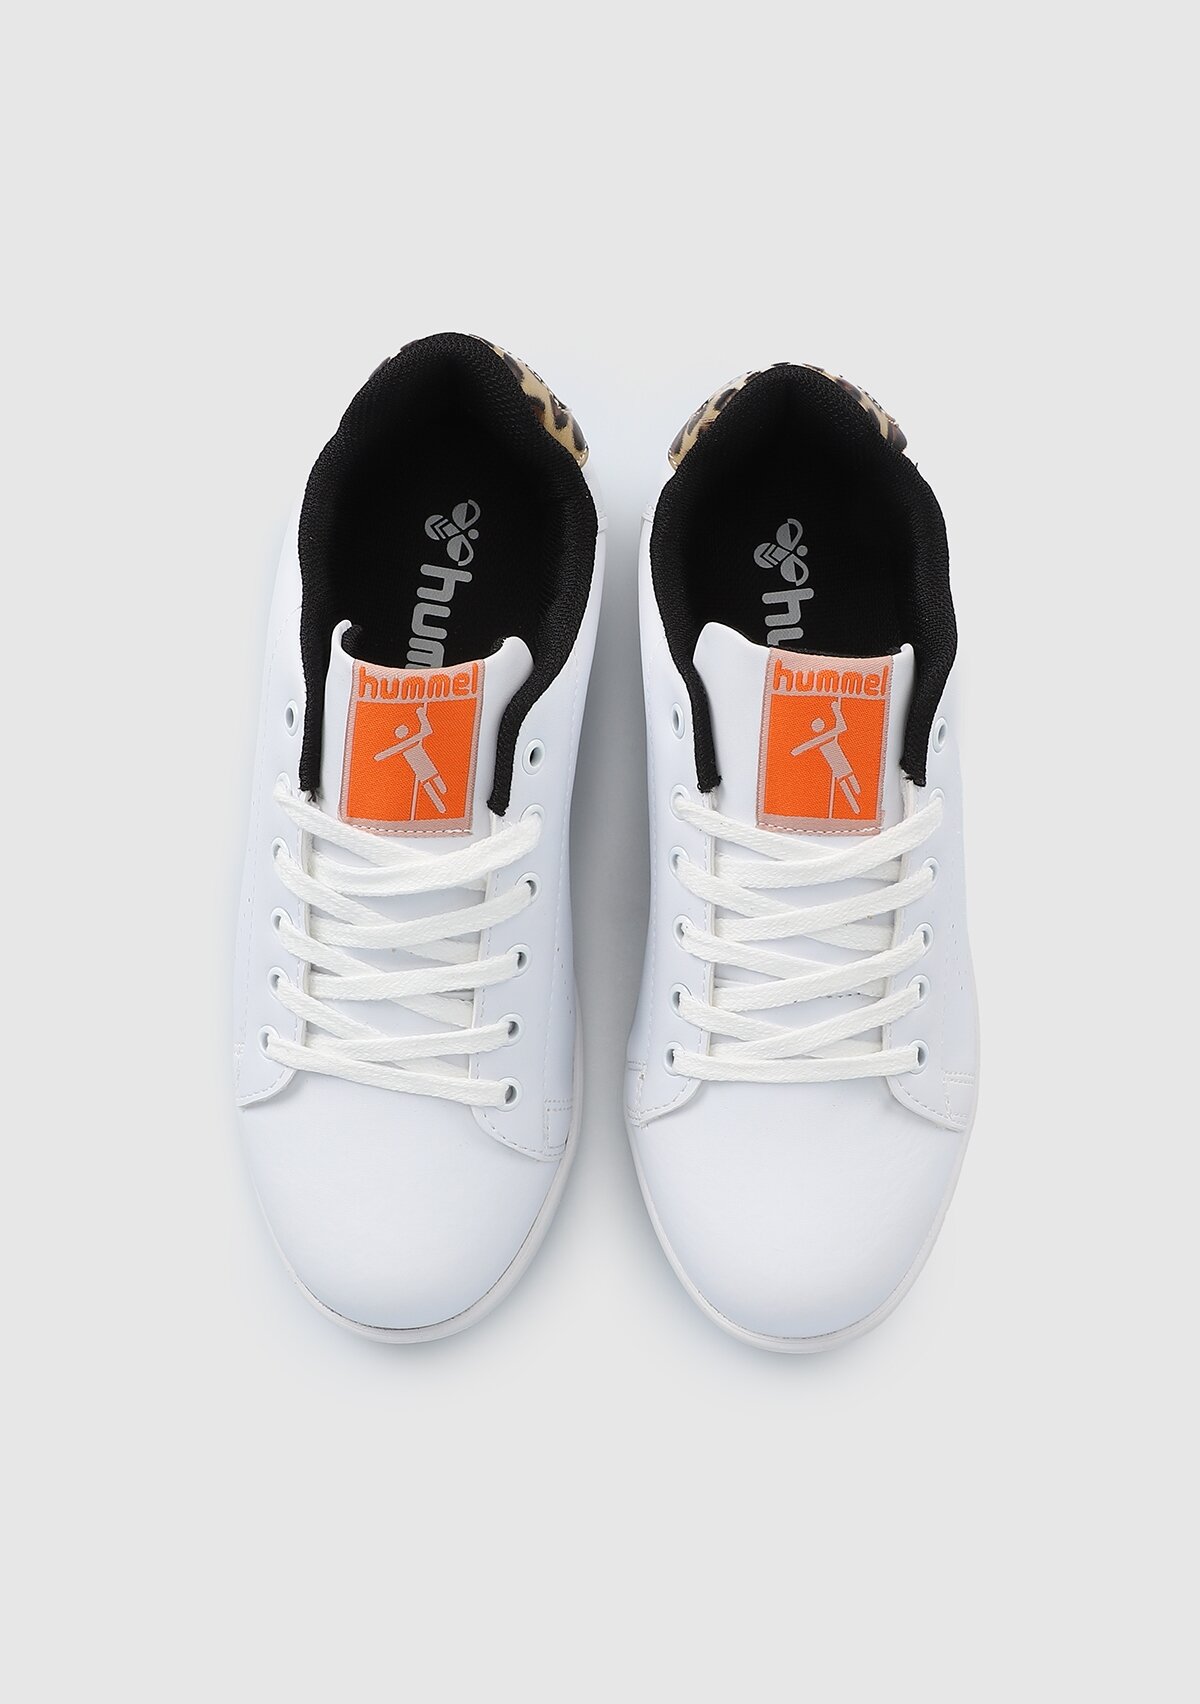 Hml Bulsan Animal Beyaz Kadın Sneakers 900063-9143